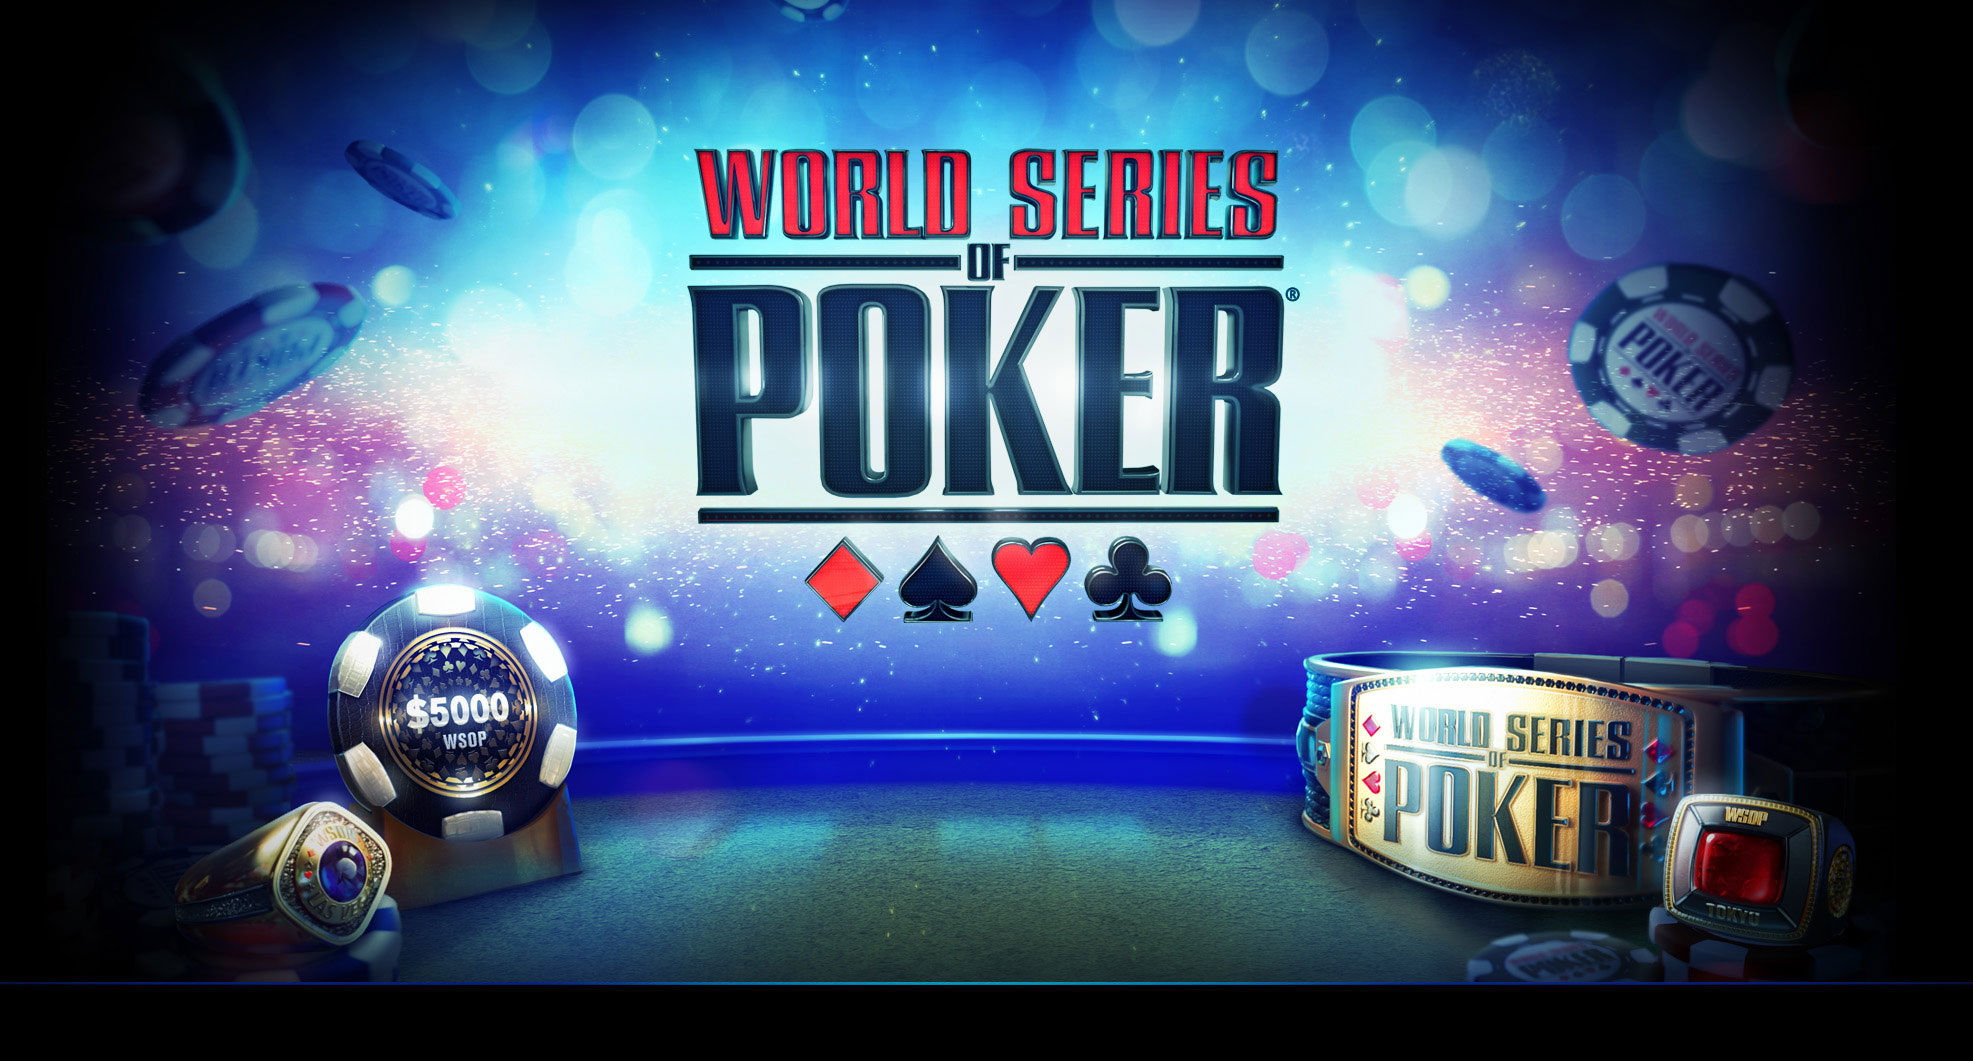 Lurk leakage Overcoat WSOP Free Poker Online | Play Texas Hold'em Poker Games